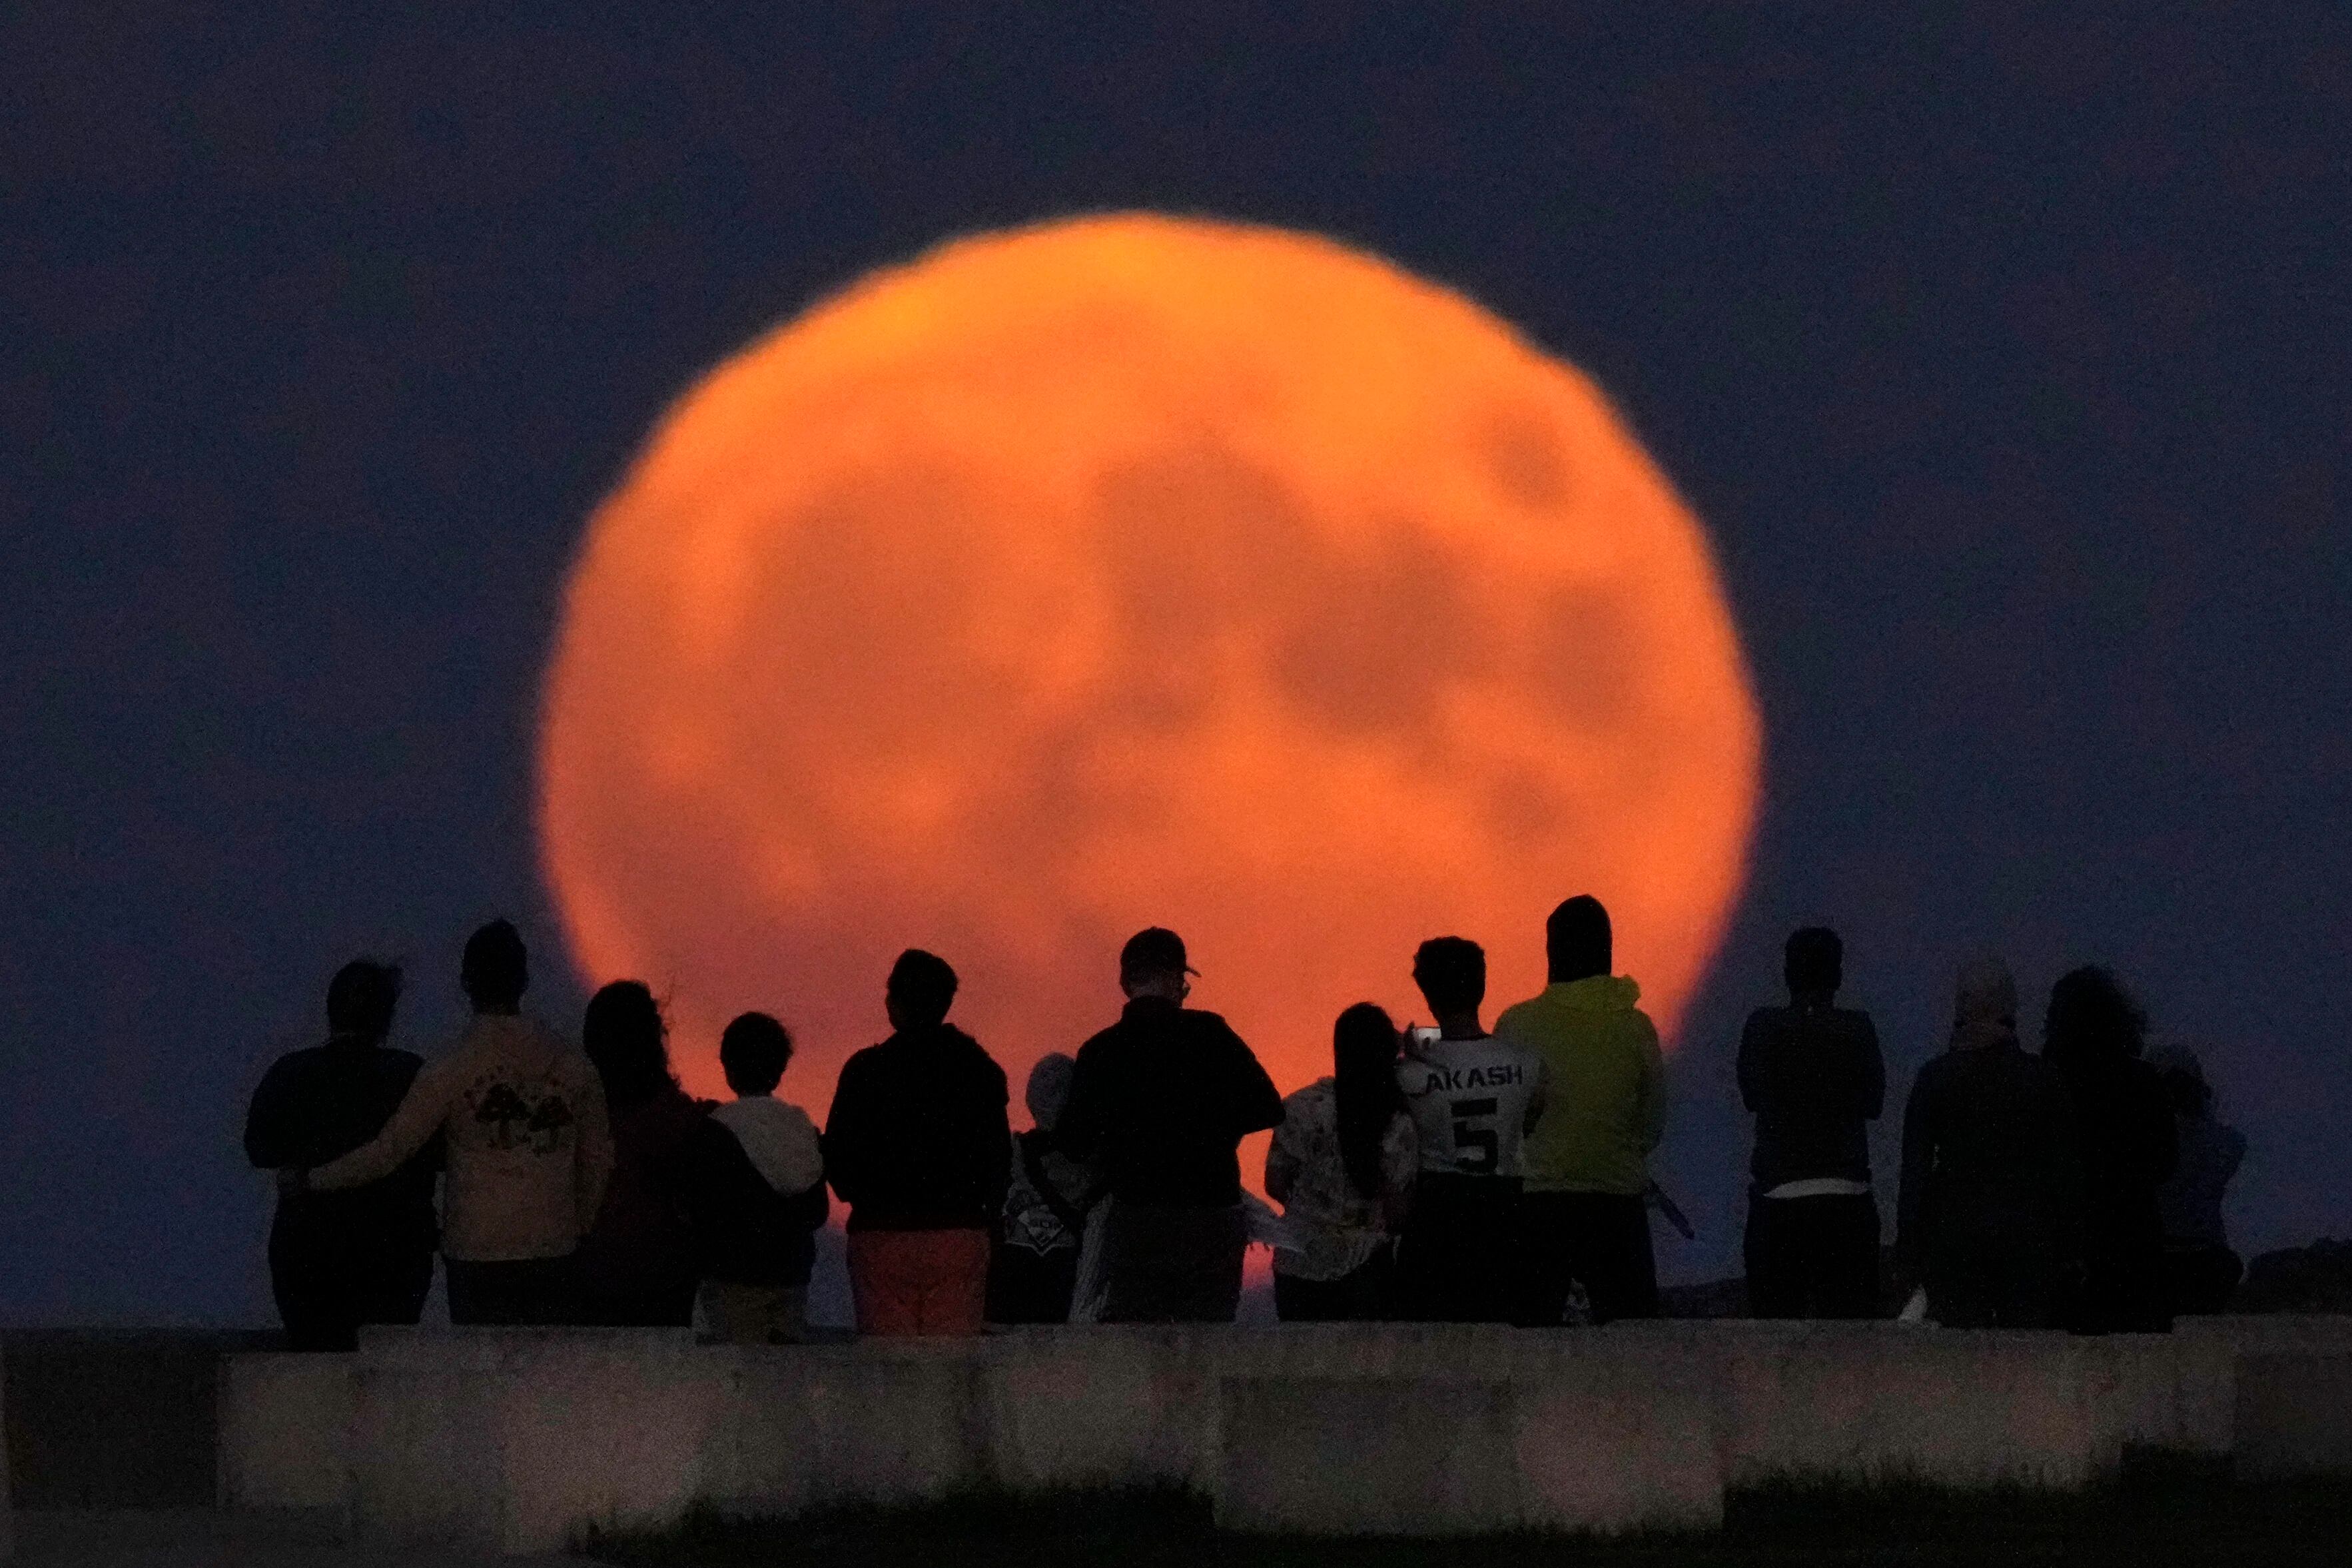 El 28 y 29 de septiembre los colombianos serán testigos de otro fenómeno en el cielo: la luna llena conocida como luna de cosecha o luna del maíz - crédito AP Foto / Charles Rex Arbogast